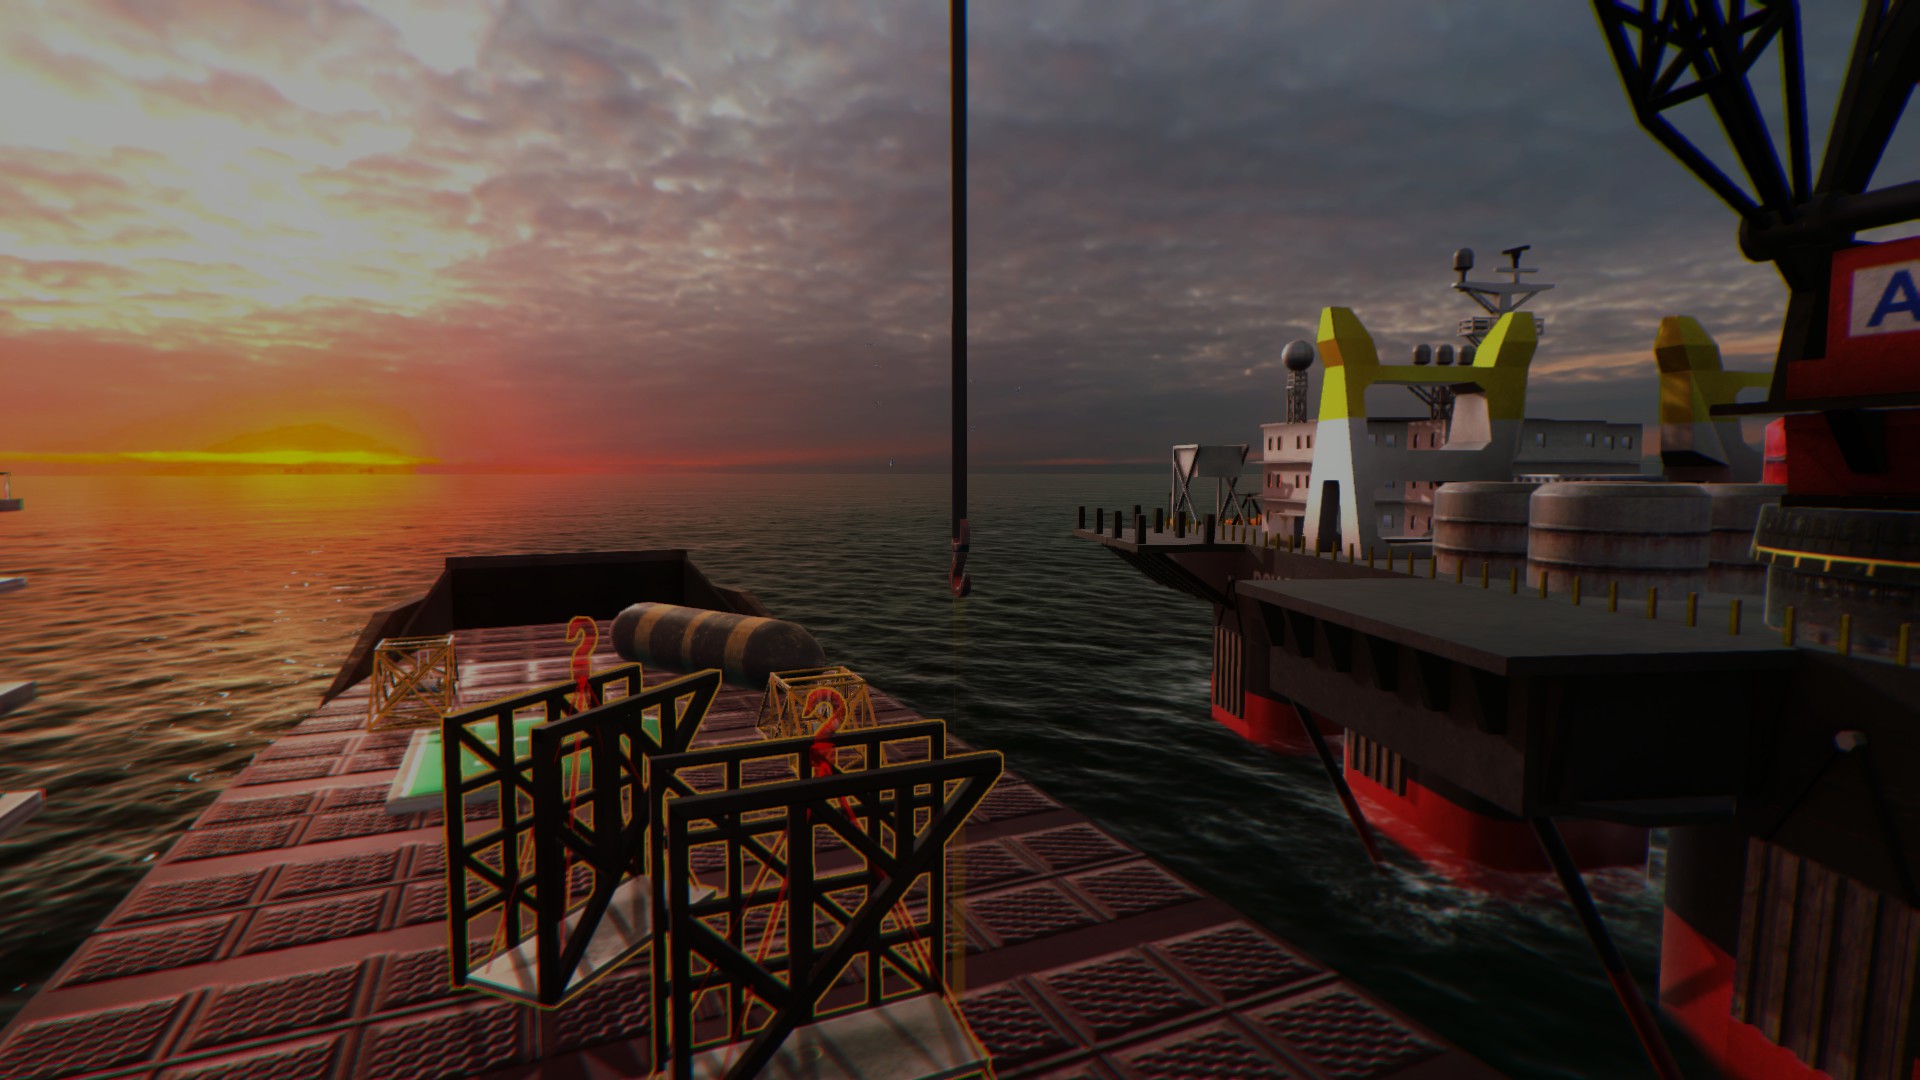 Ships 2017 screenshot